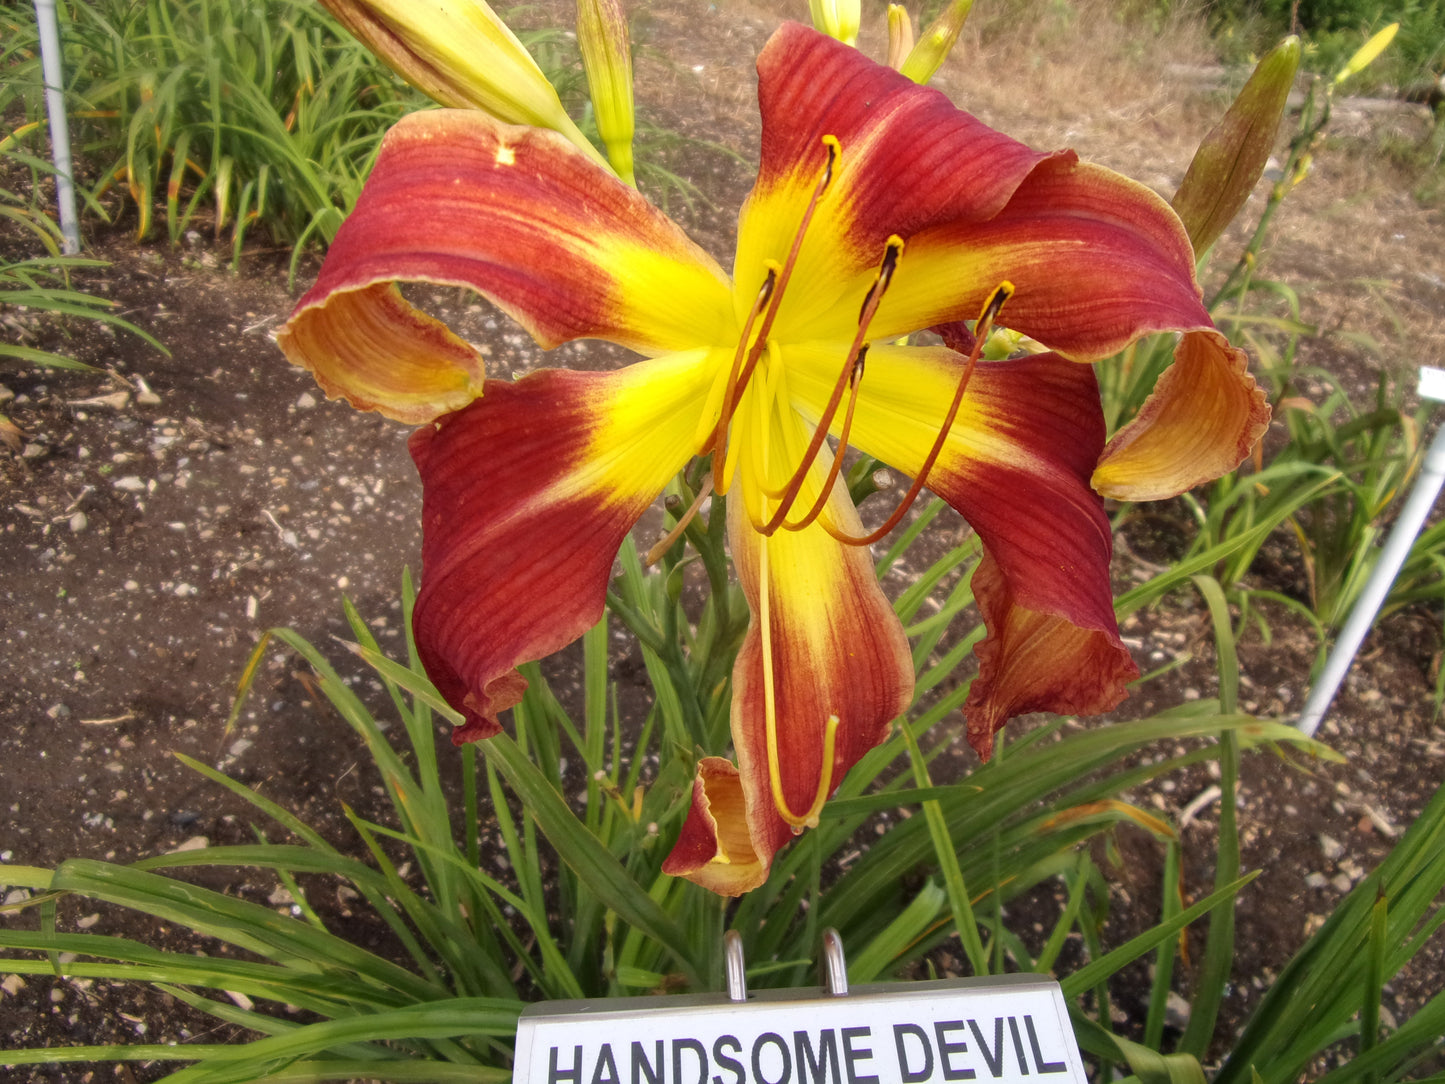 HANDSOME DEVIL